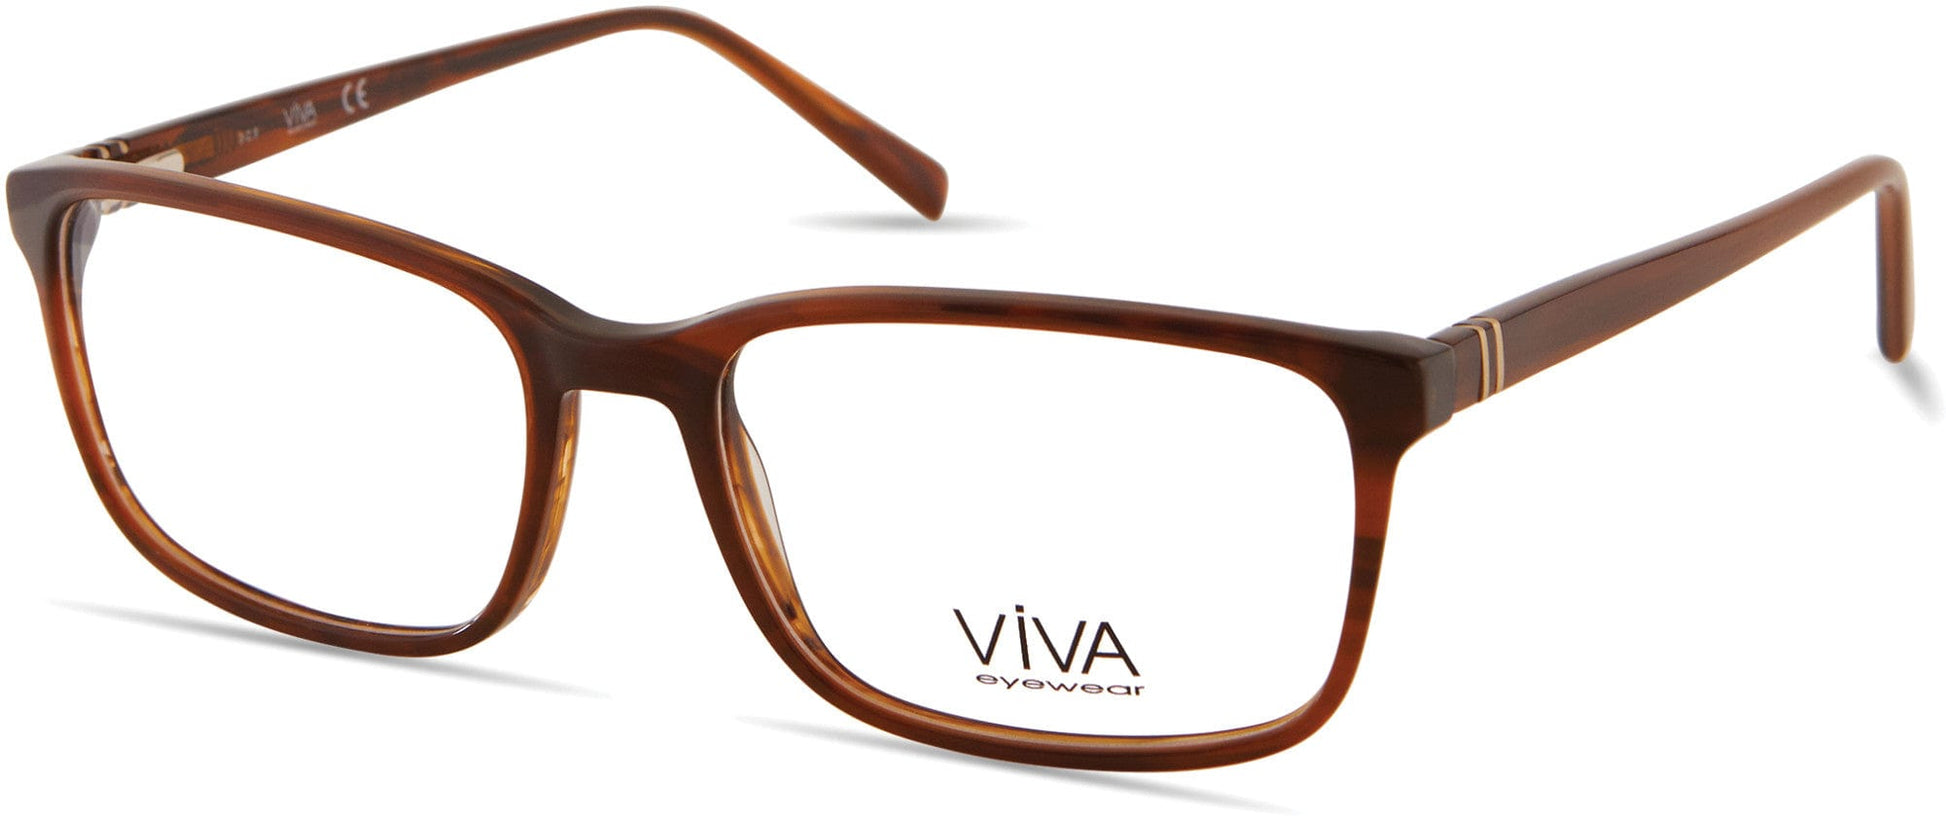 Viva VV4044 Rectangular Eyeglasses 045-045 - Shiny Light Brown